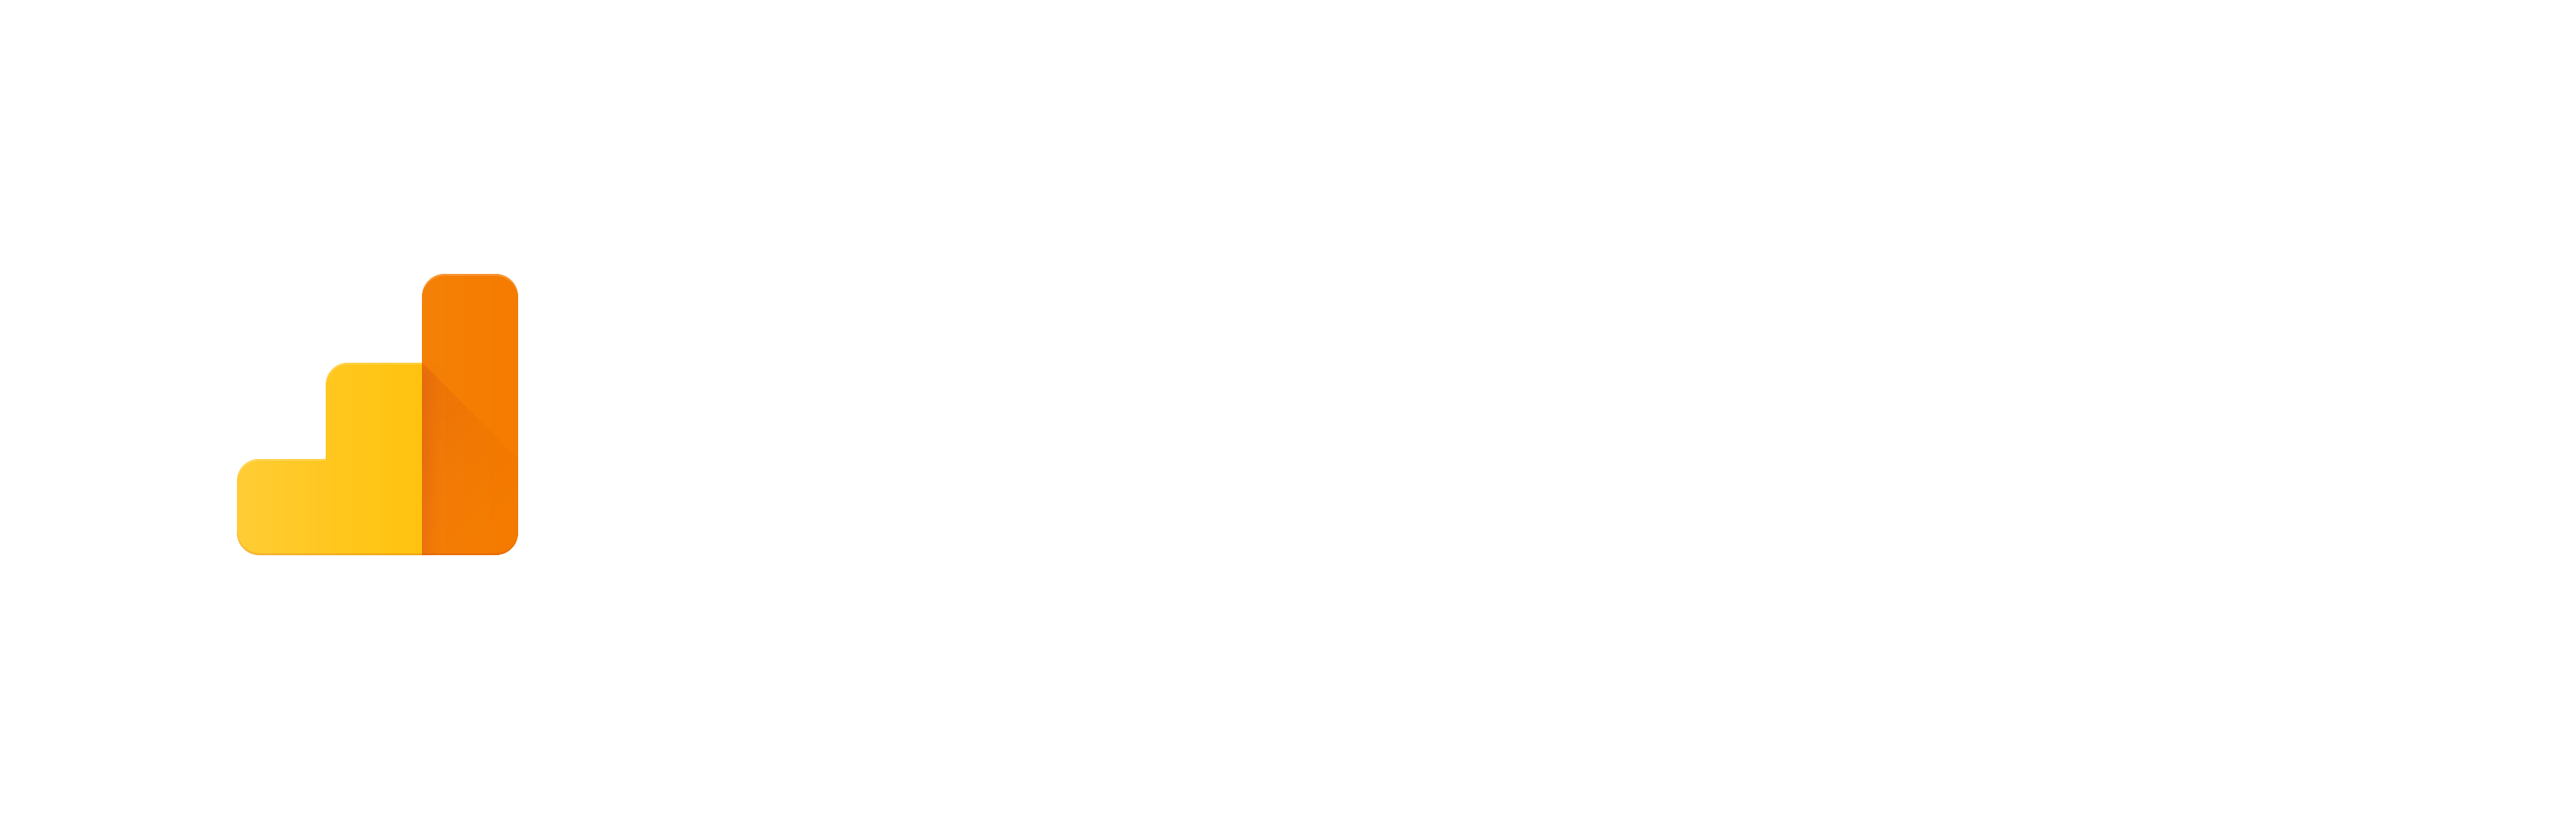 Google White Logo - Google Analytics Developer Branding Guidelines & Policies | Google ...